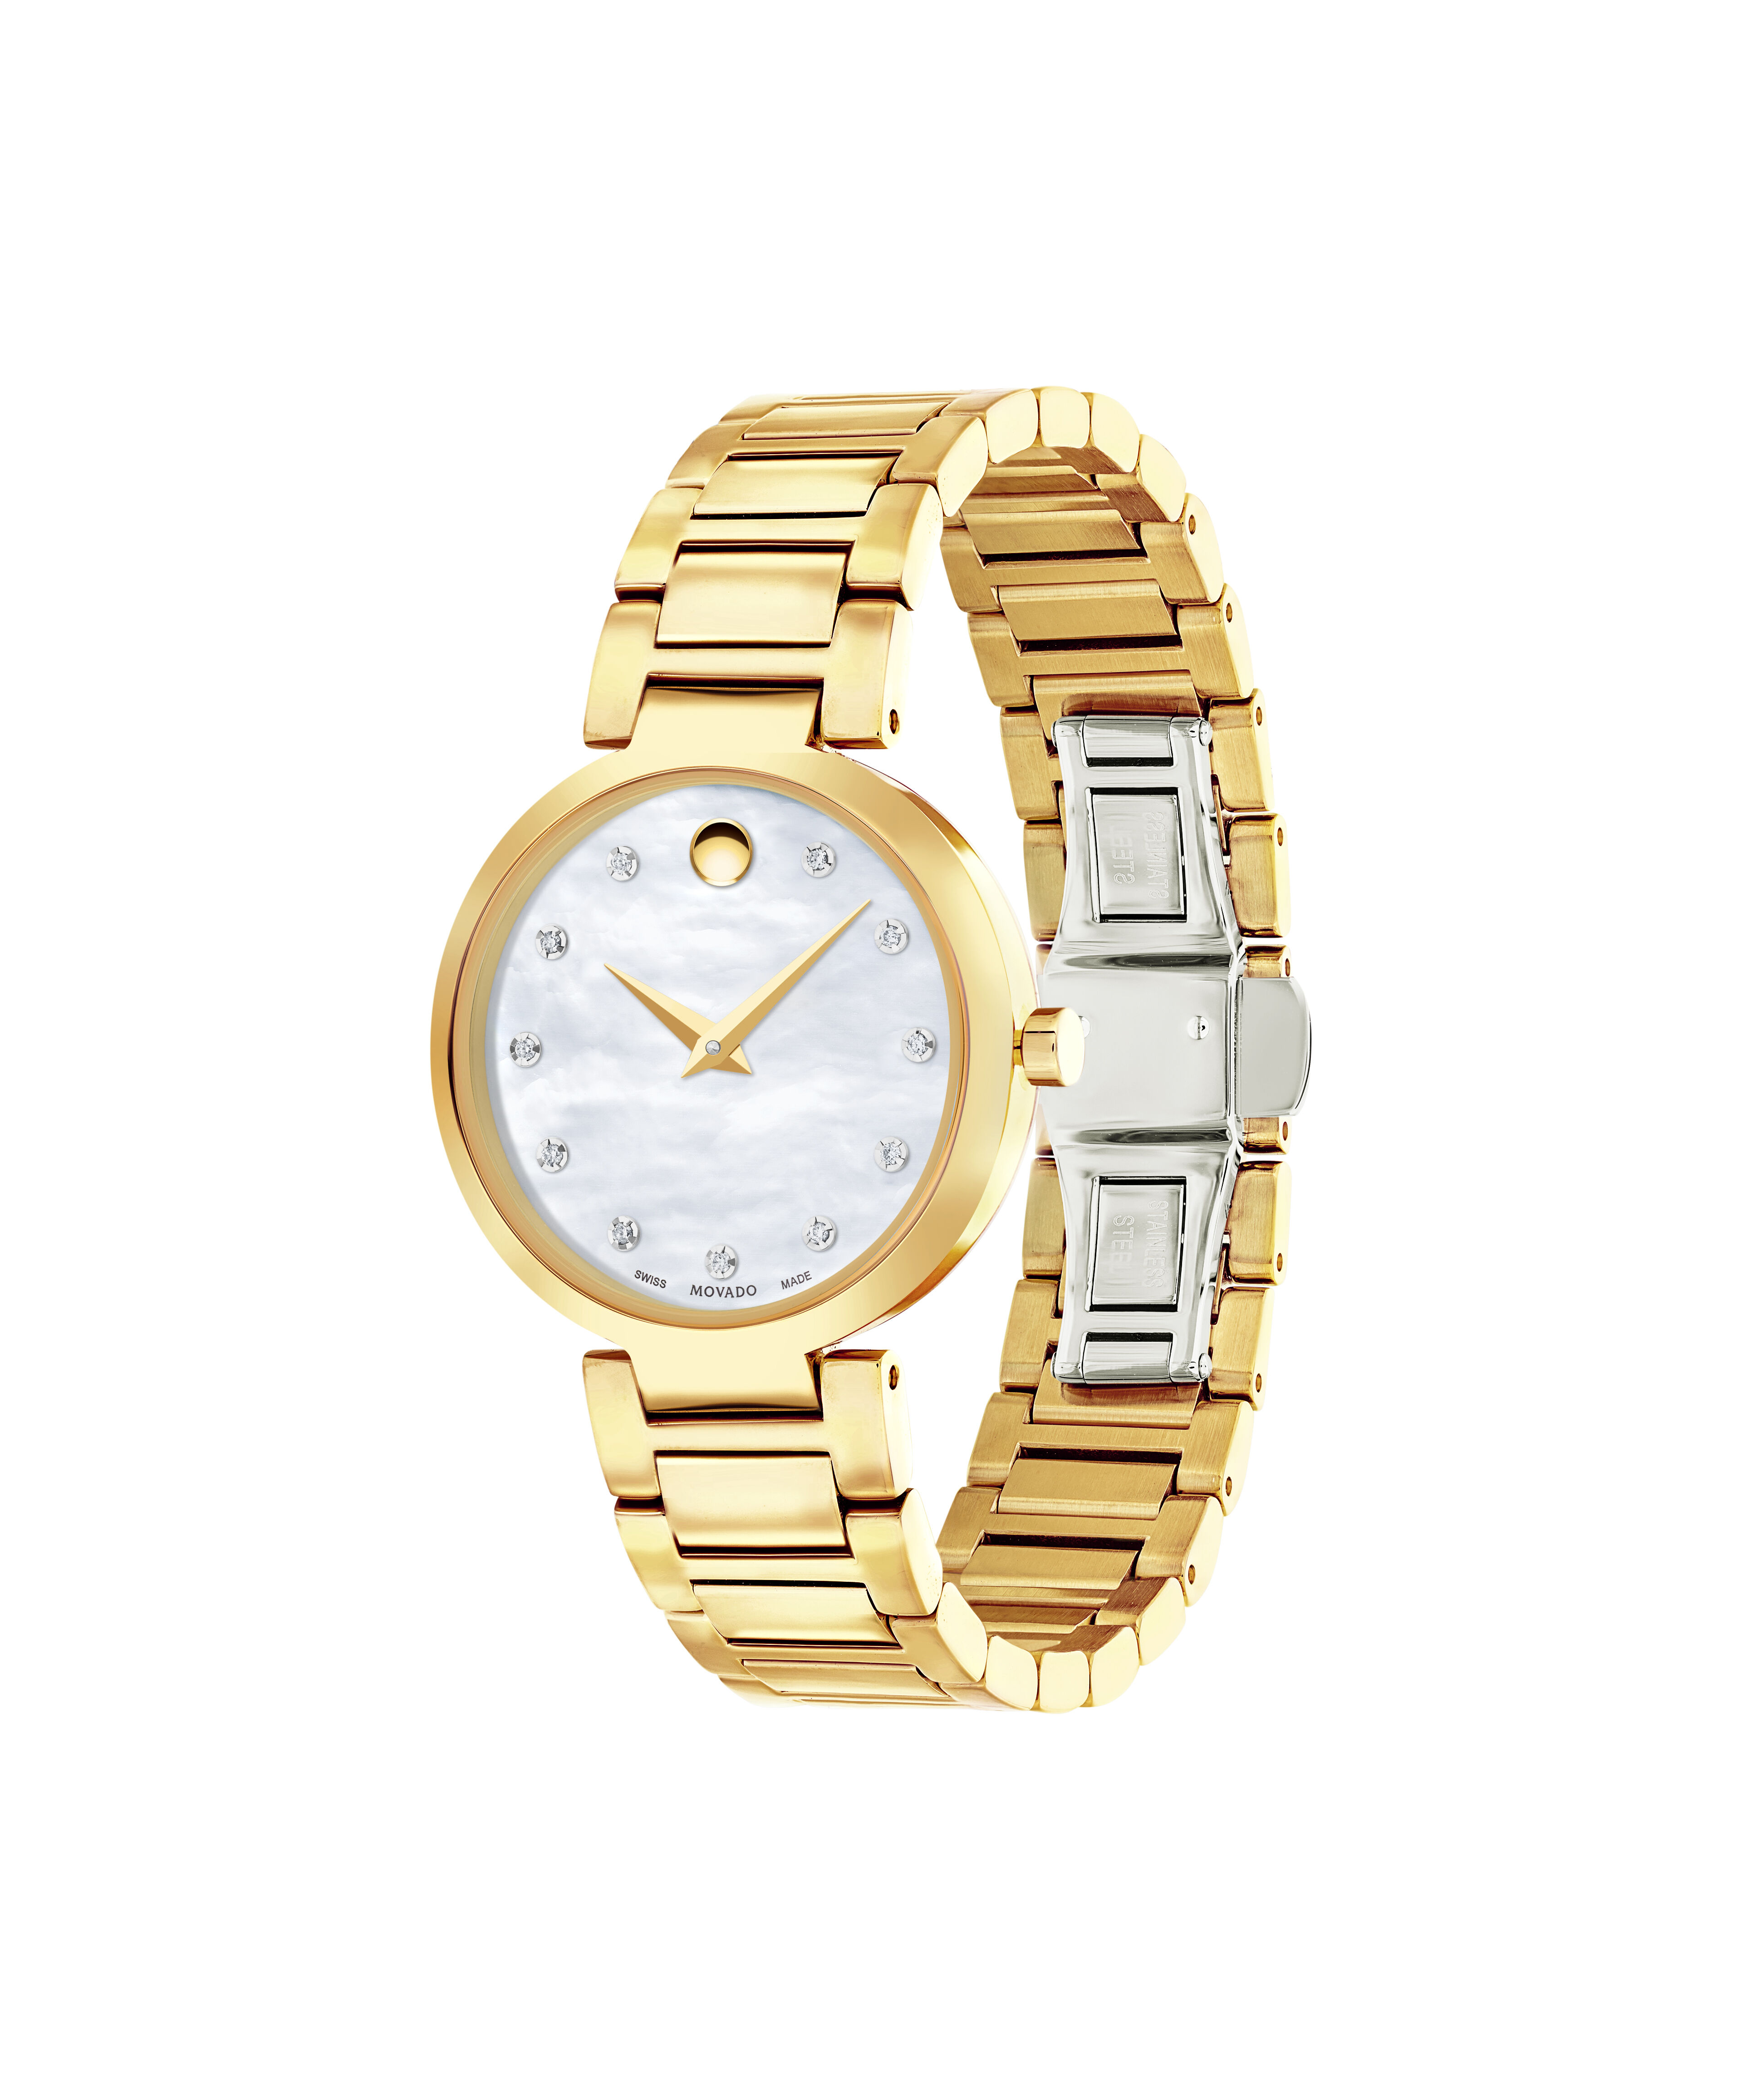 Cartier Replica Watches Amazon